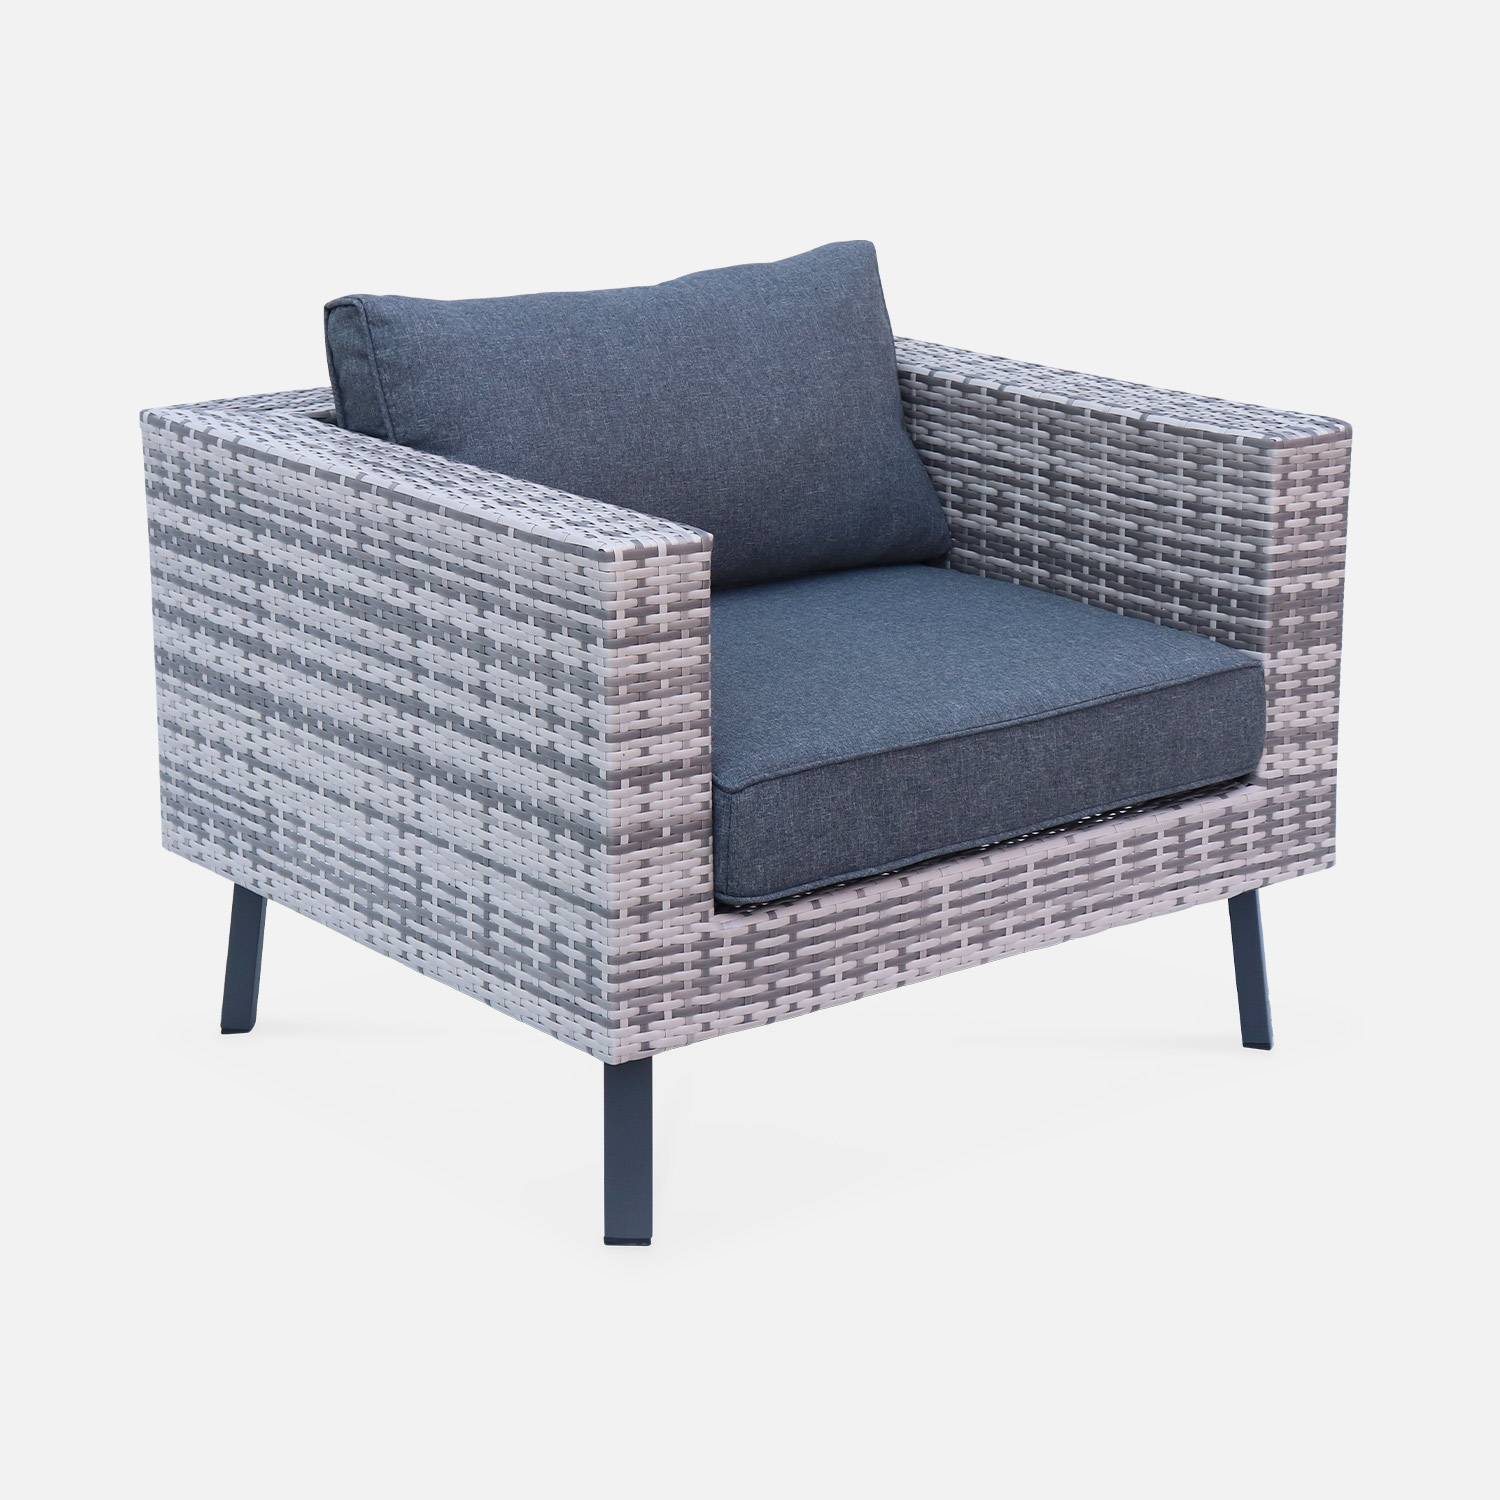 Loungeset 5 zitplaatsen in plat wicker, gemixt grijs wicker en donkergrijze kussens,sweeek,Photo3